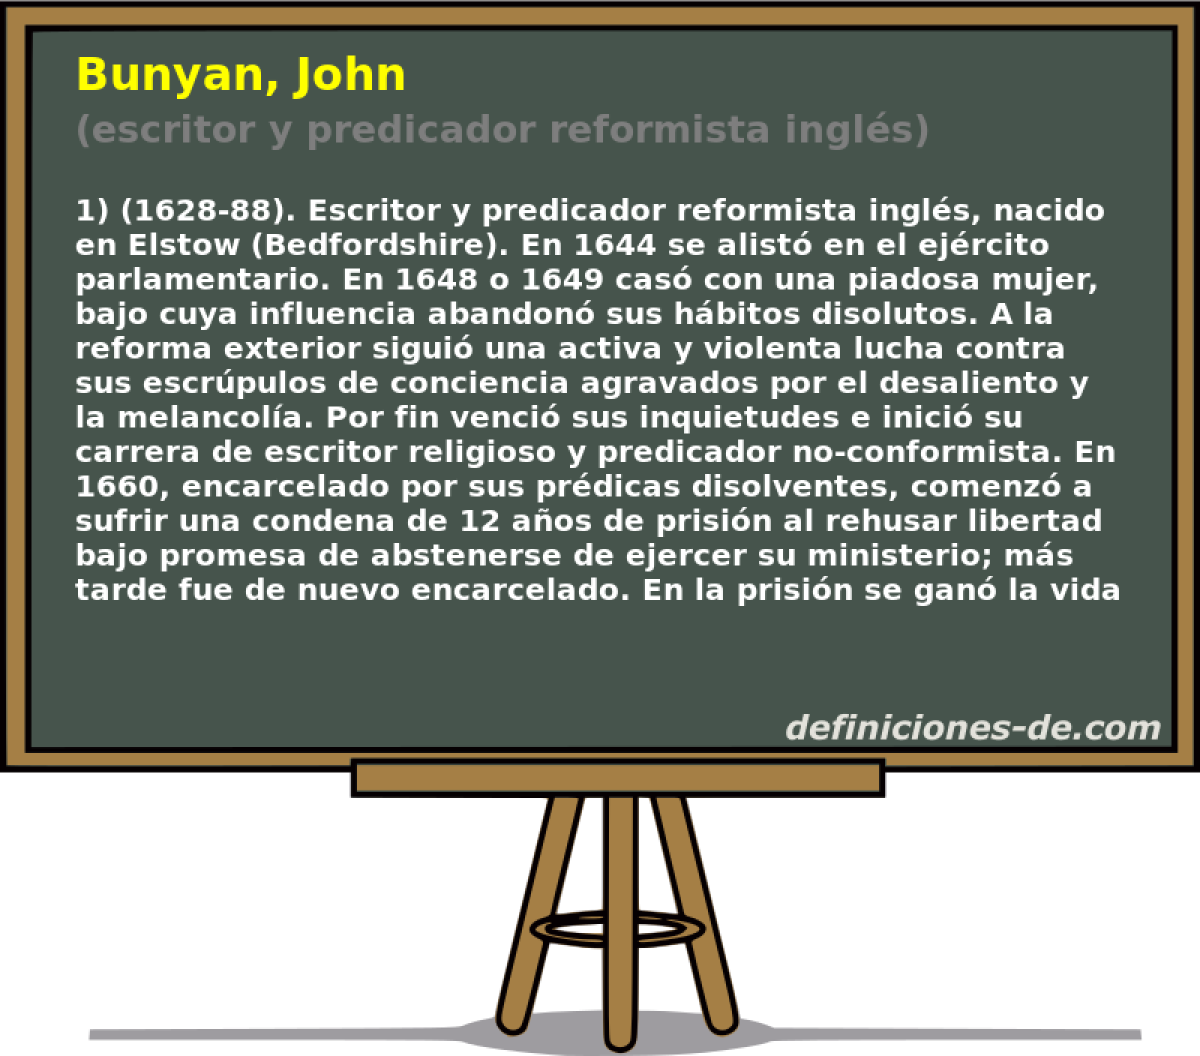 Bunyan, John (escritor y predicador reformista ingls)